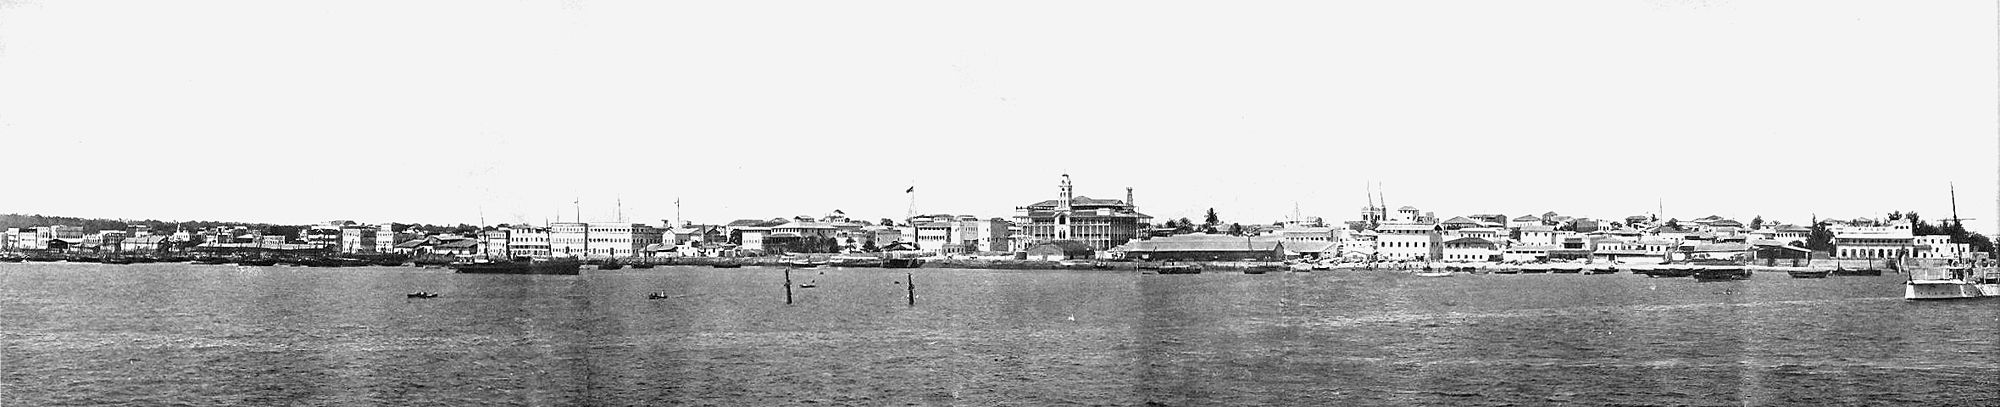 Masterne på det sænkede skib HHS Glasgow kan ses i dette billede af Zanzibars havn taget i 1902. Vidundernes hus er den hvide bygning med et tårn og mange balkoner i midten af billedet; haremmet og paladset stod til venstre for dette. Konsulatbygningerne er til højre.